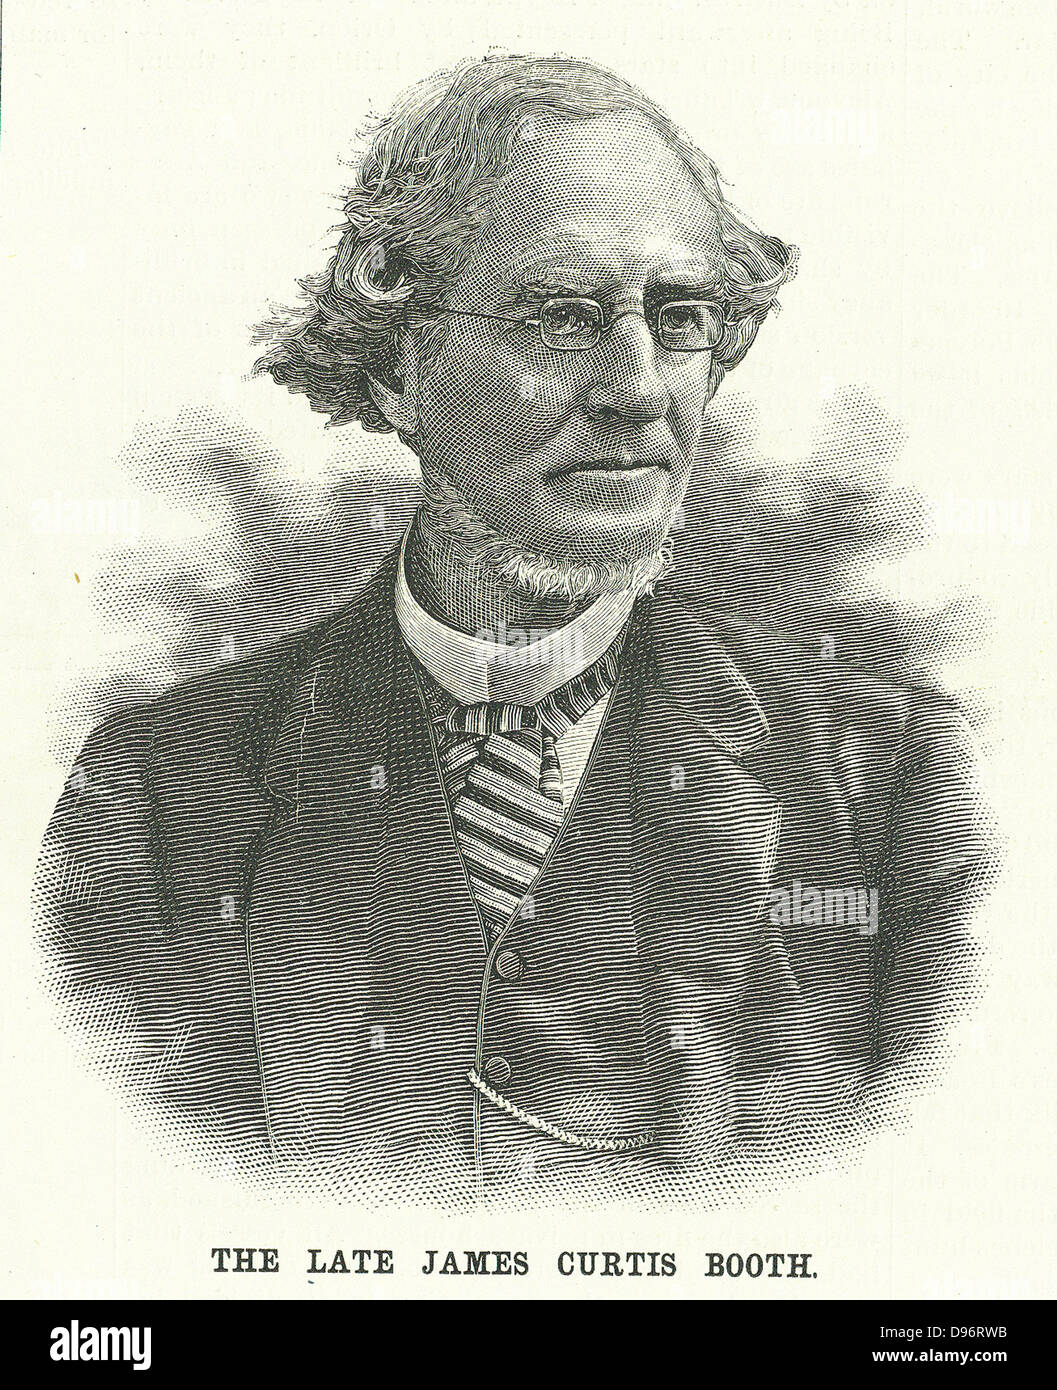 James Curtis Booth (1810-1888) amerikanischer Chemiker, in Philadelphia geboren. Der erste Staat Geologe für Delaware. Schmelze und Veredler, der US Mint (1849-1888). Gravur von "Scientific American" (New York, 9. Juni 1888). Stockfoto